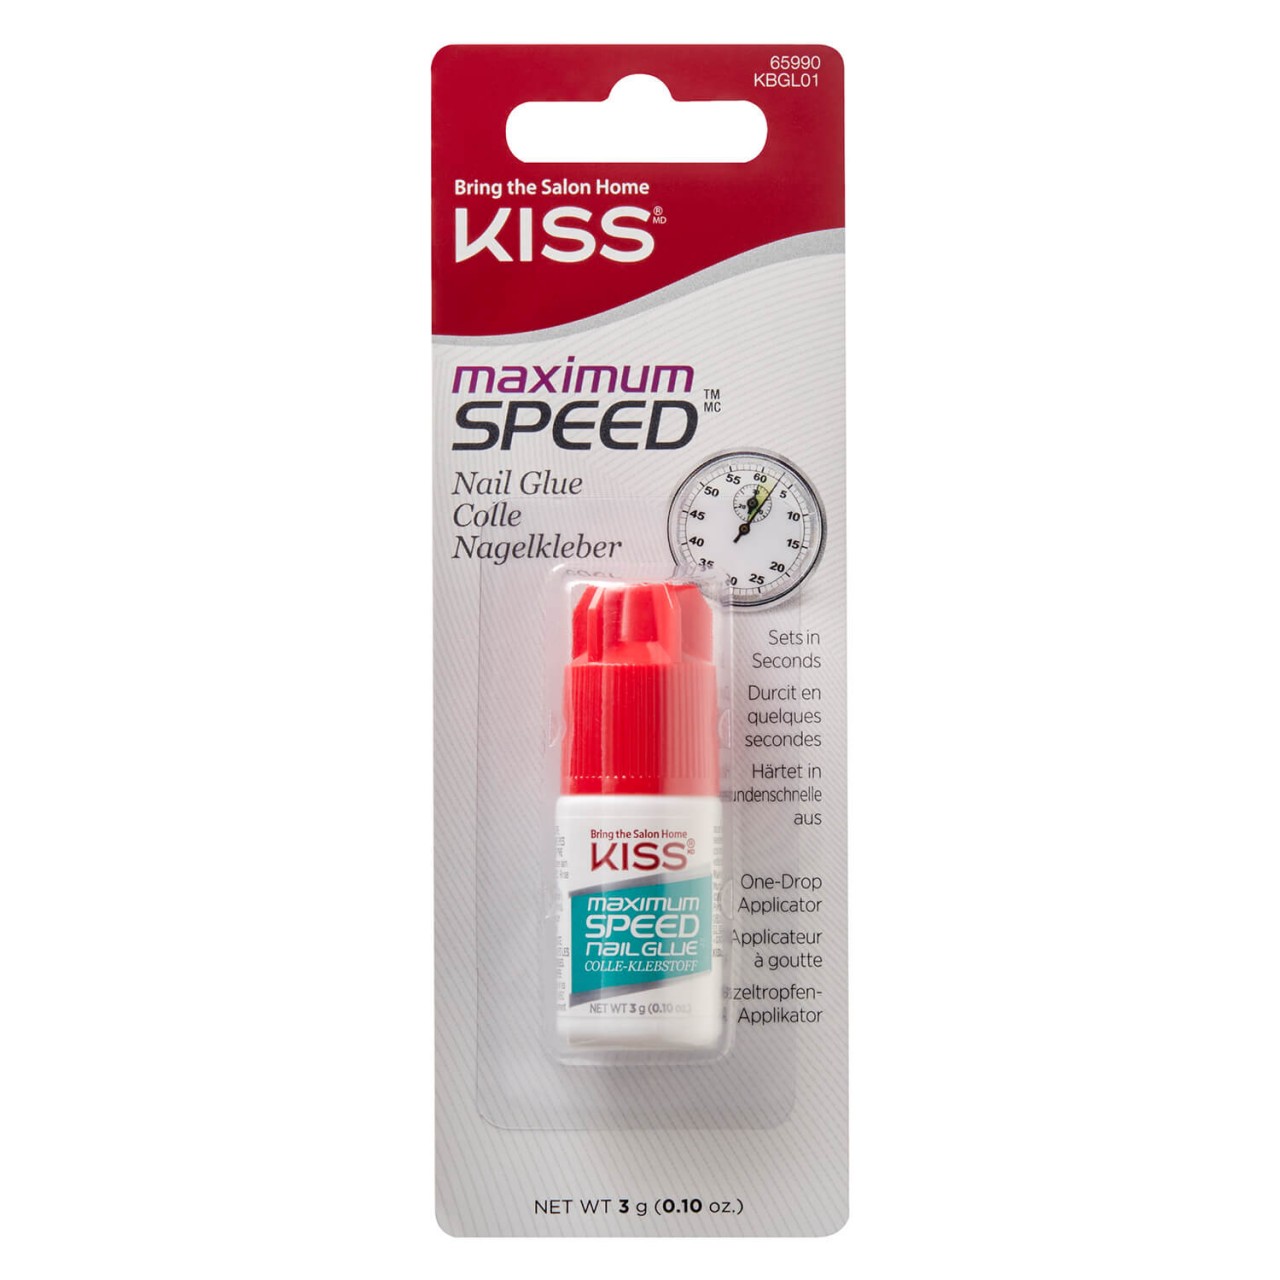 KISS Nails - Maximum Speed Nail Glue von KISS